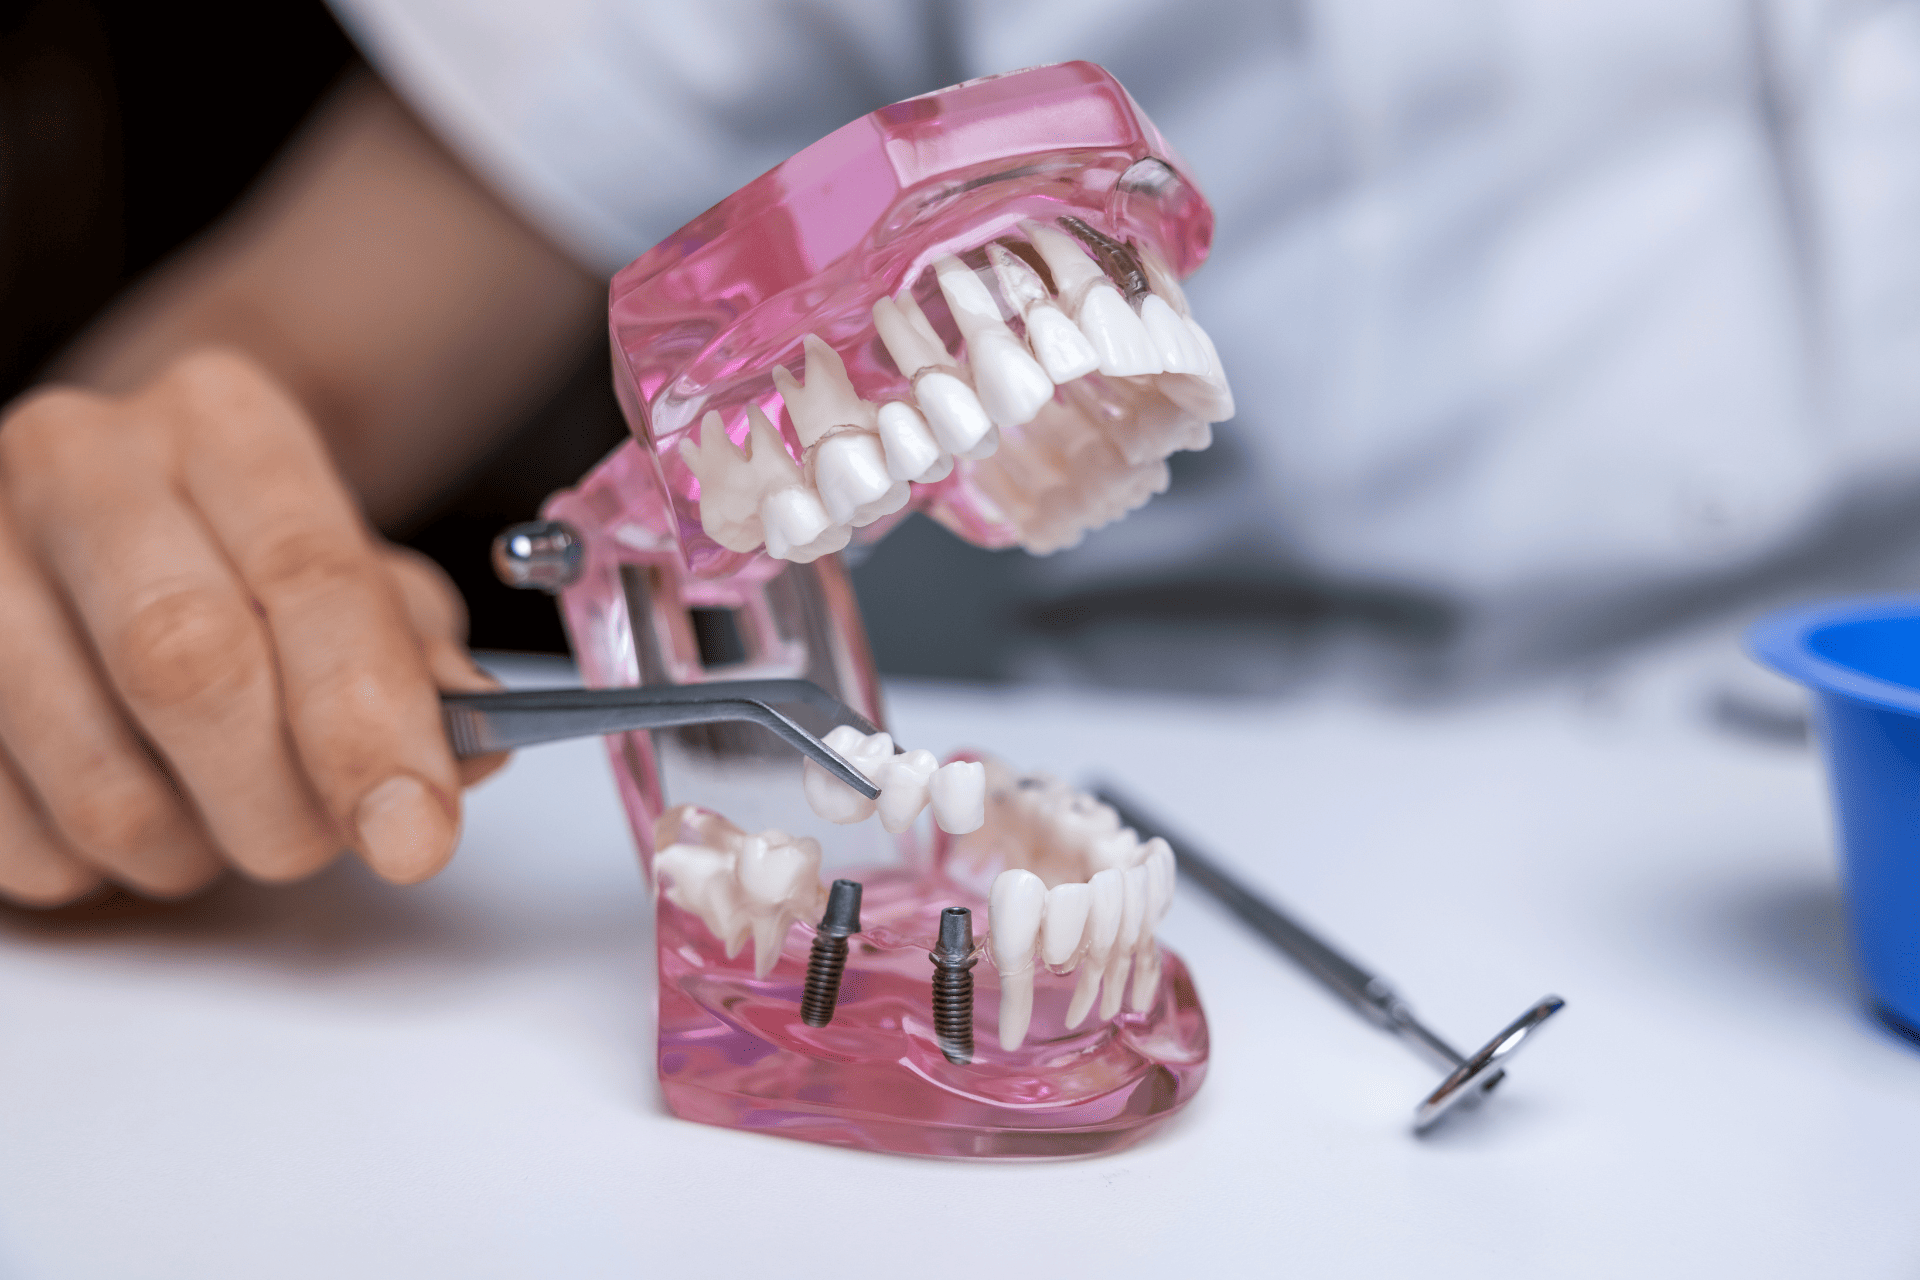 Image of sample for dental implants